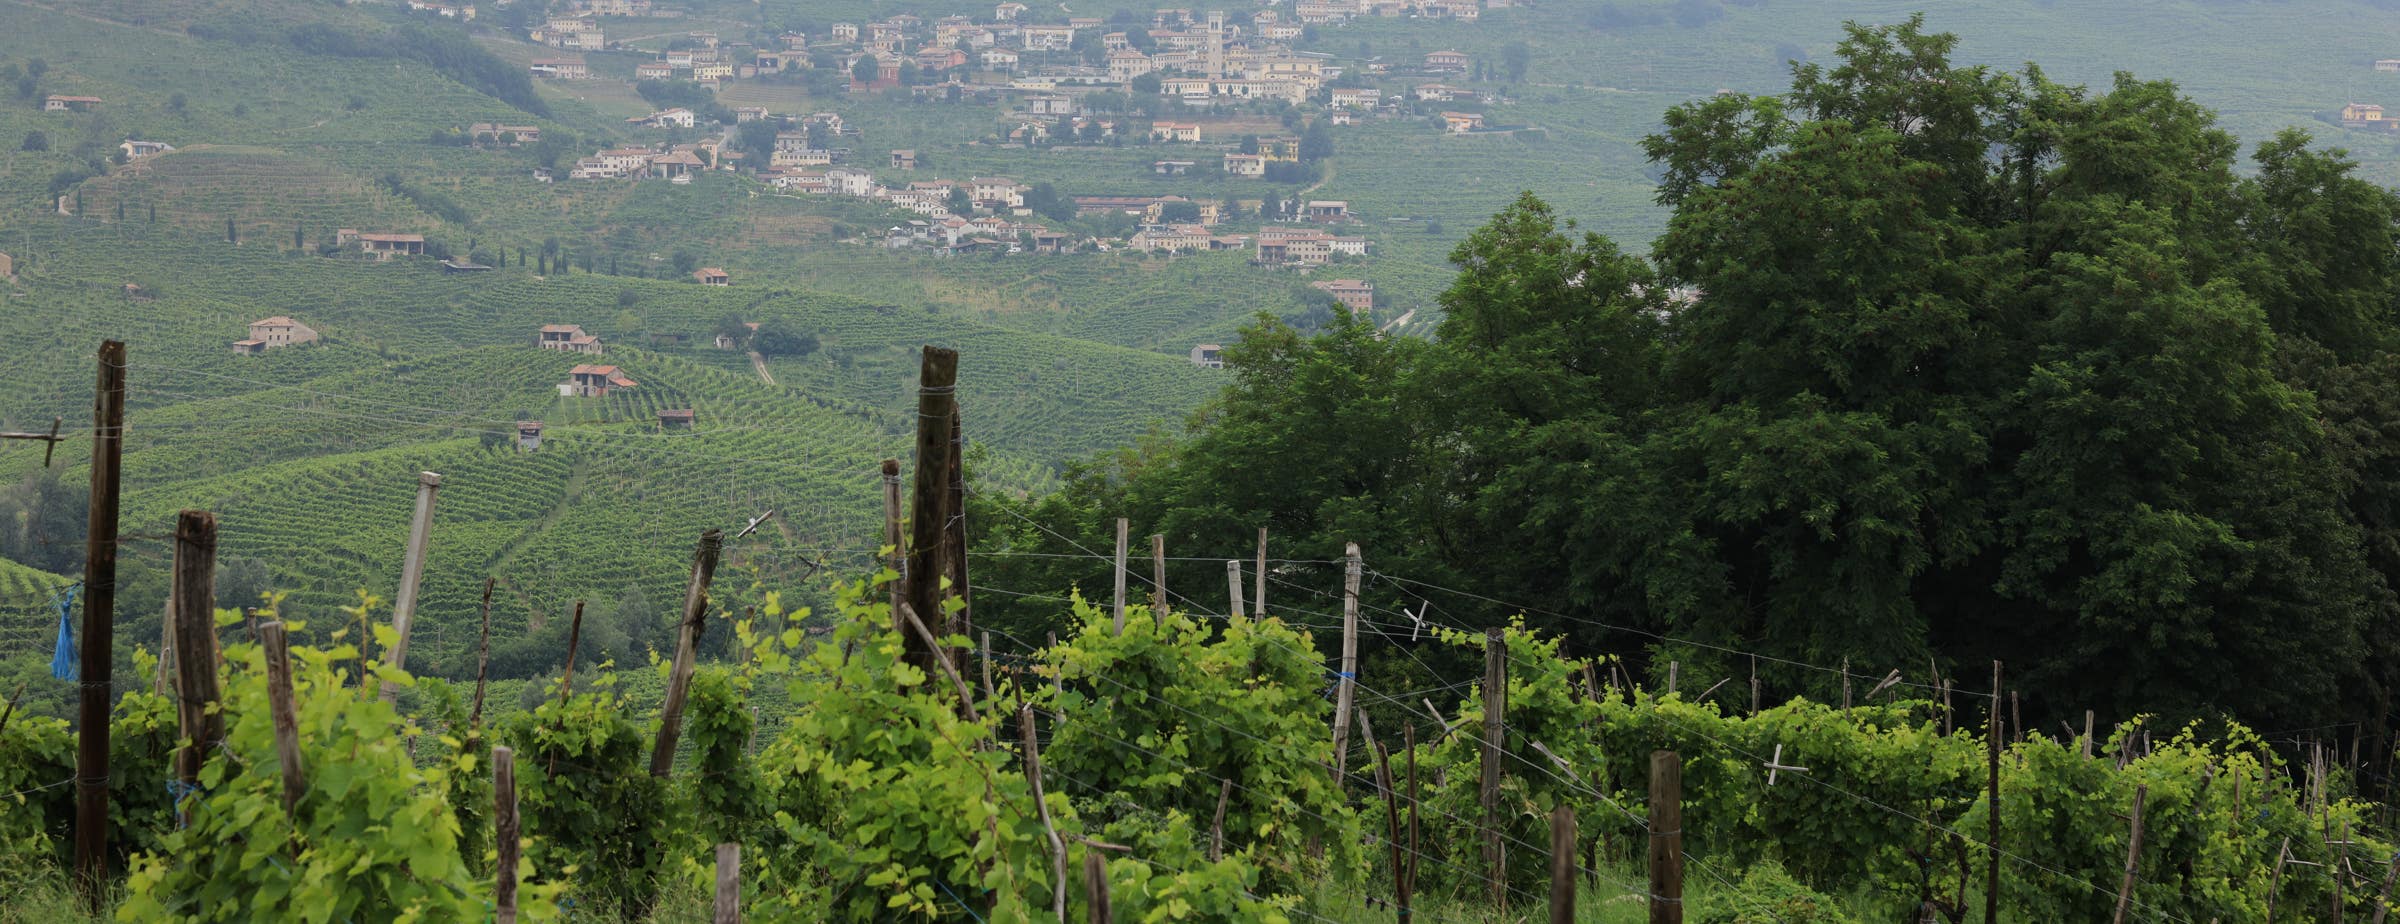 Pogled iz vinograda, ki prikazuje bližnje vinograde spredaj ter več vinogradov in majhno vas v daljavi.